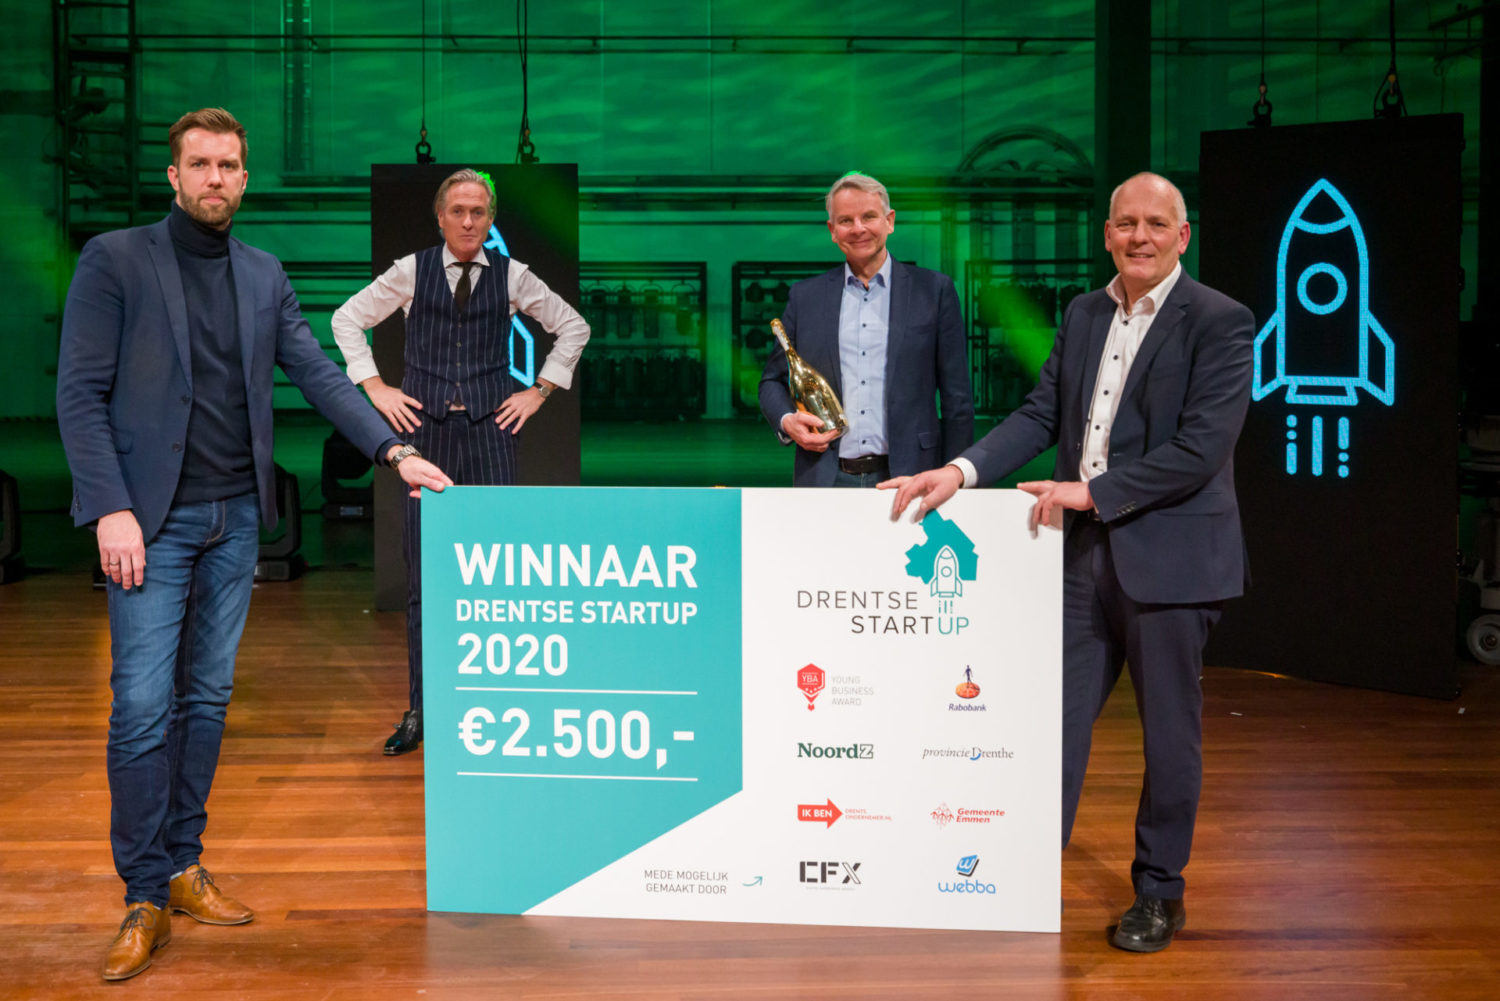 Nieuwe editie Drentse Startup: "Een sterk podium met 130.000 kijkers op RTL-Z & Videoland"